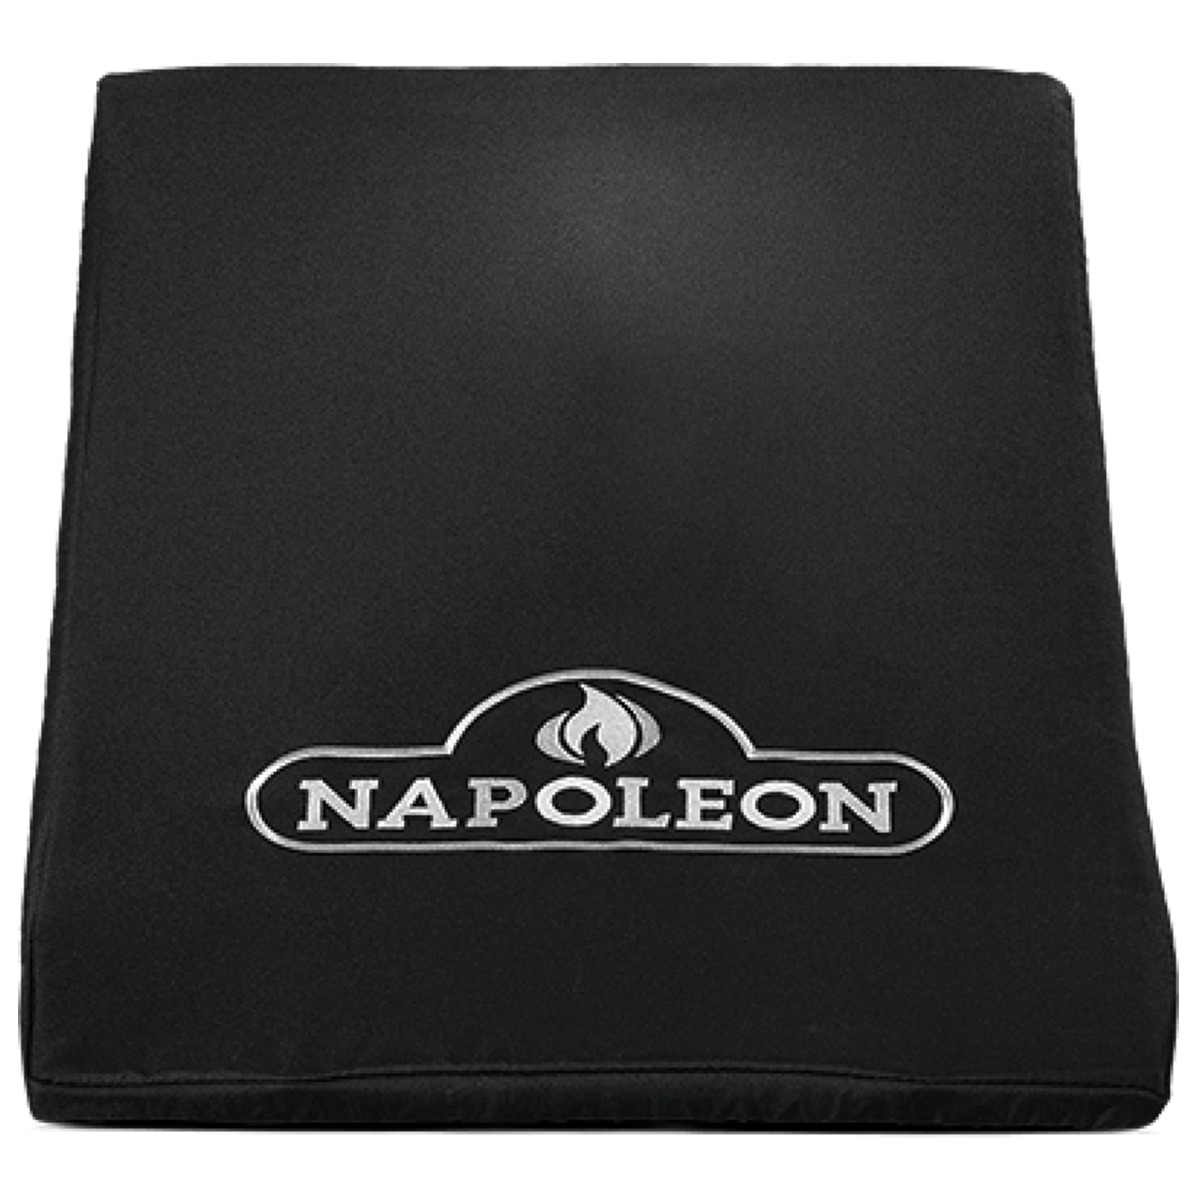 Κάλυμμα για Μονούς Πλευρικούς Καυστήρες Built-In – Napoleon®